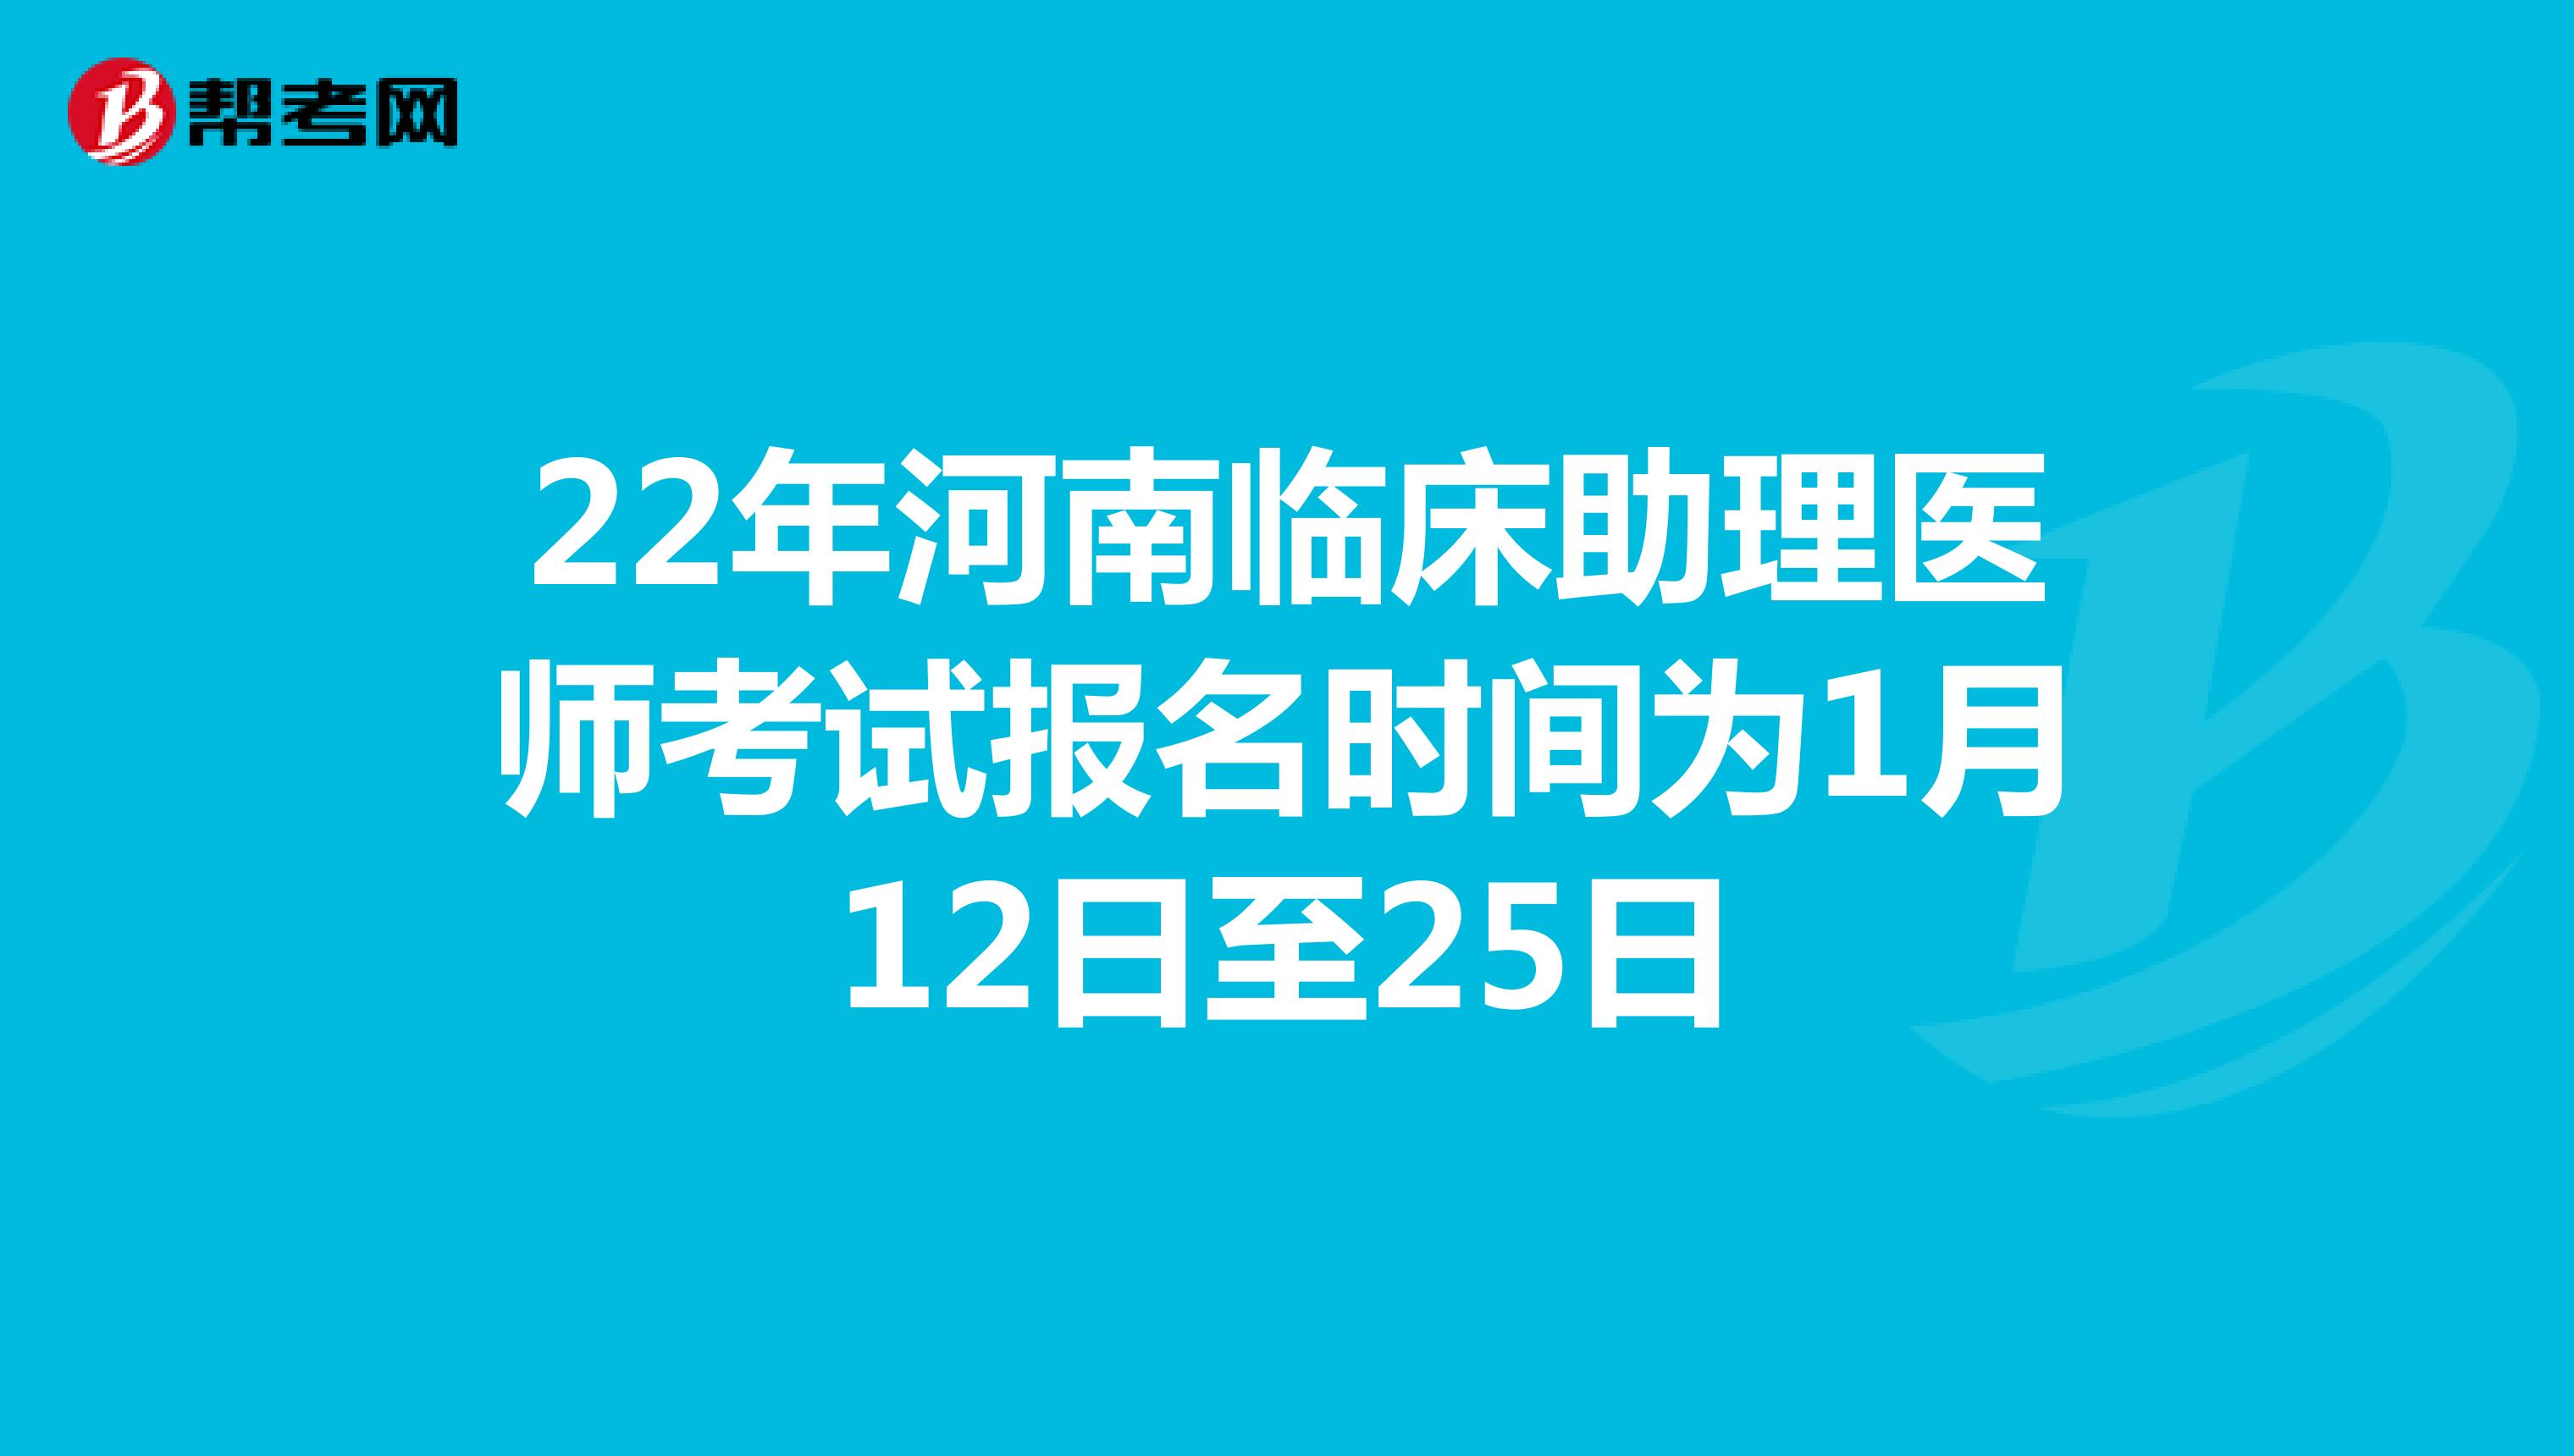 22年河南临床助理医师考试报名时间为1月12日至25日